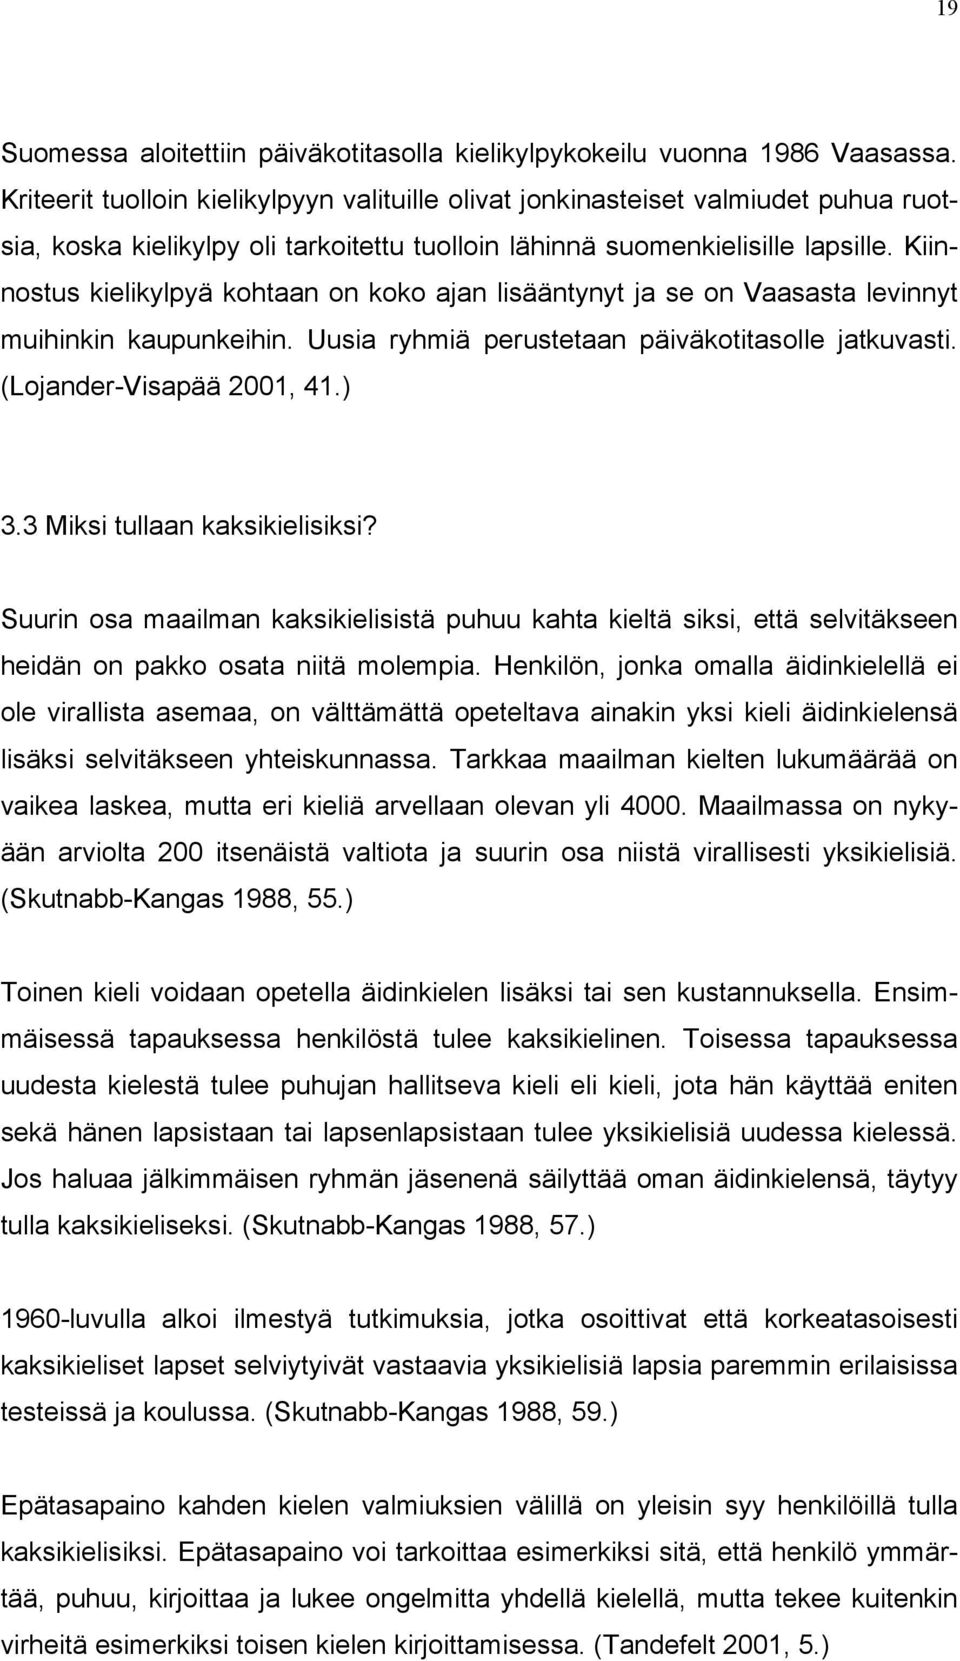 Kiinnostus kielikylpyä kohtaan on koko ajan lisääntynyt ja se on Vaasasta levinnyt muihinkin kaupunkeihin. Uusia ryhmiä perustetaan päiväkotitasolle jatkuvasti. (Lojander-Visapää 2001, 41.) 3.